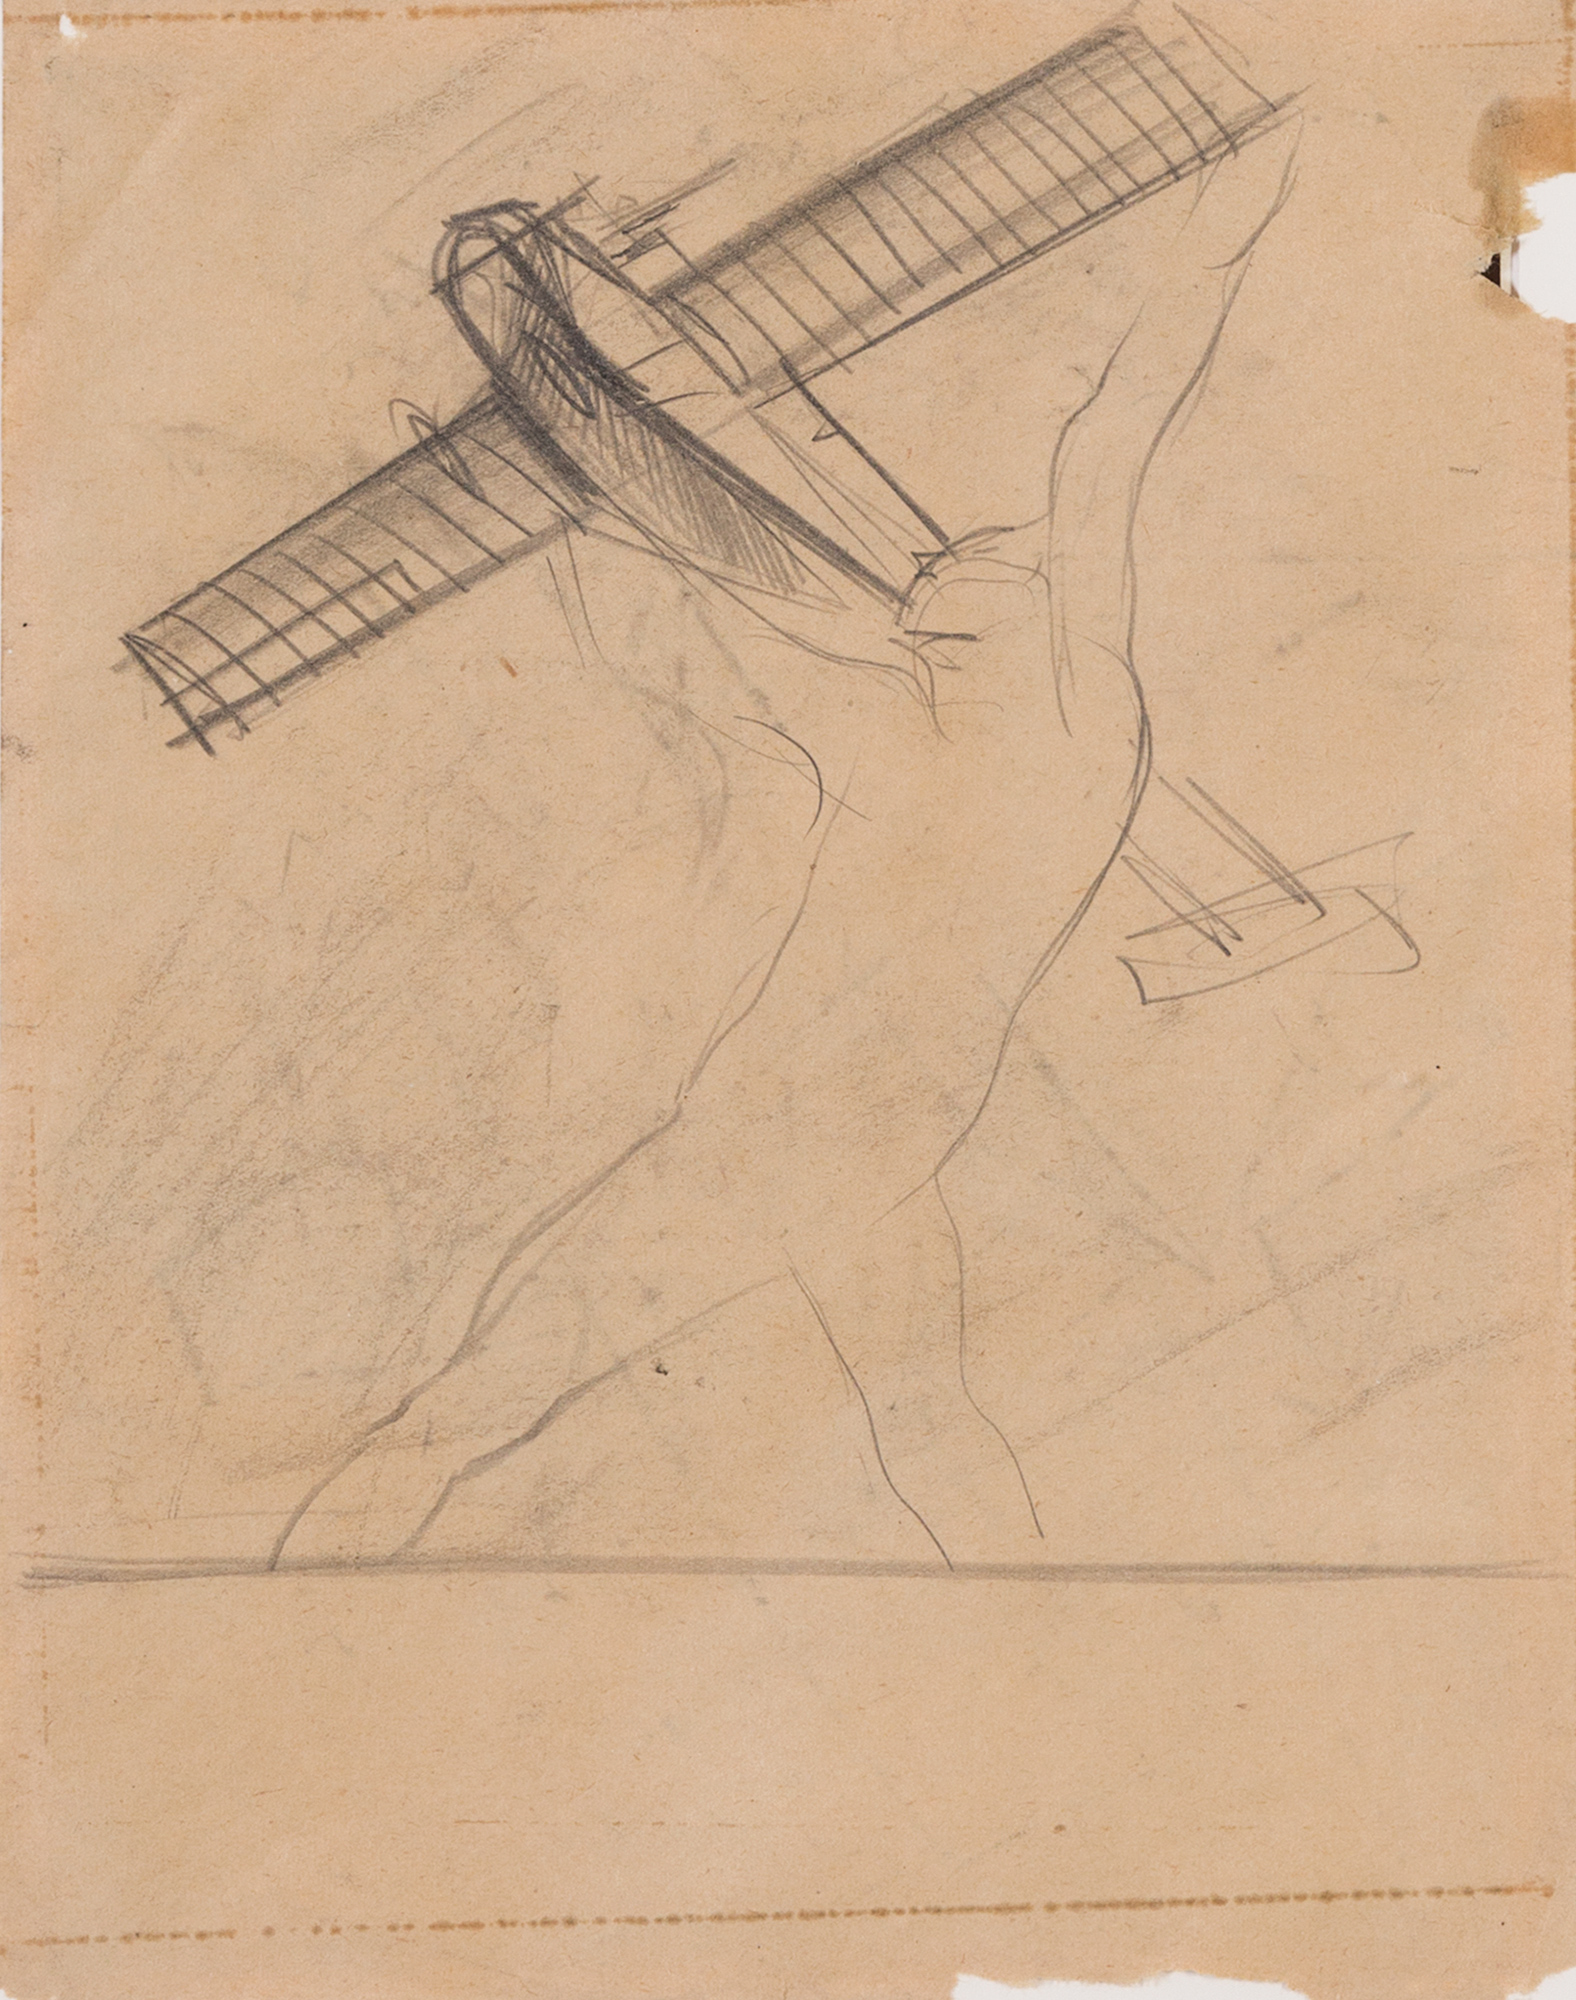 L’uomo e l’aereo, 1927